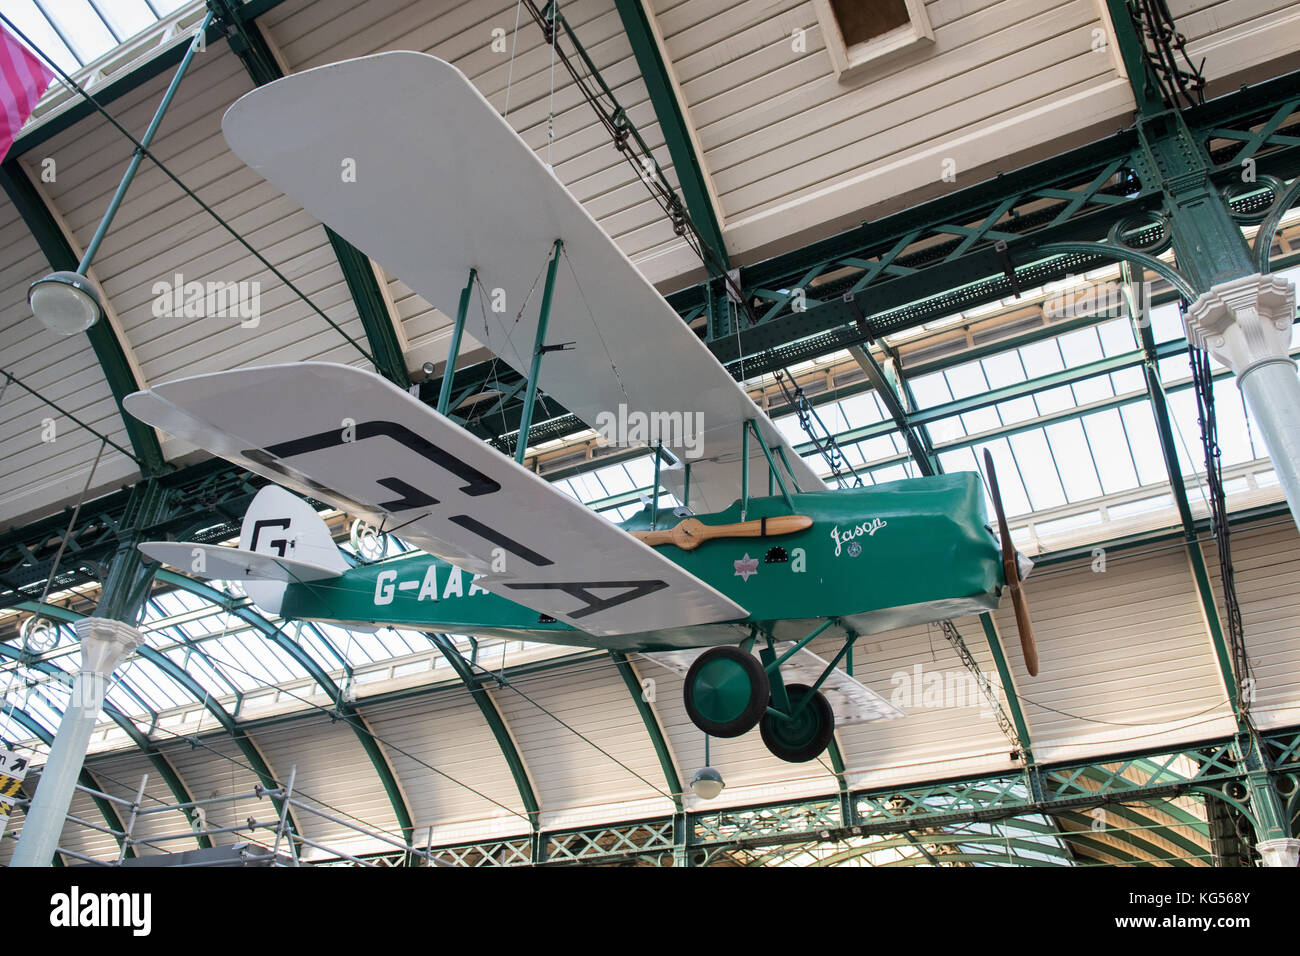 Réplique pleine échelle modèle avion Gypsy Moth piloté par Amy Johnson fabriqué par des prisonniers à HMP Hull suspendu à la gare de Hull, Hull, Angleterre, Royaume-Uni Banque D'Images